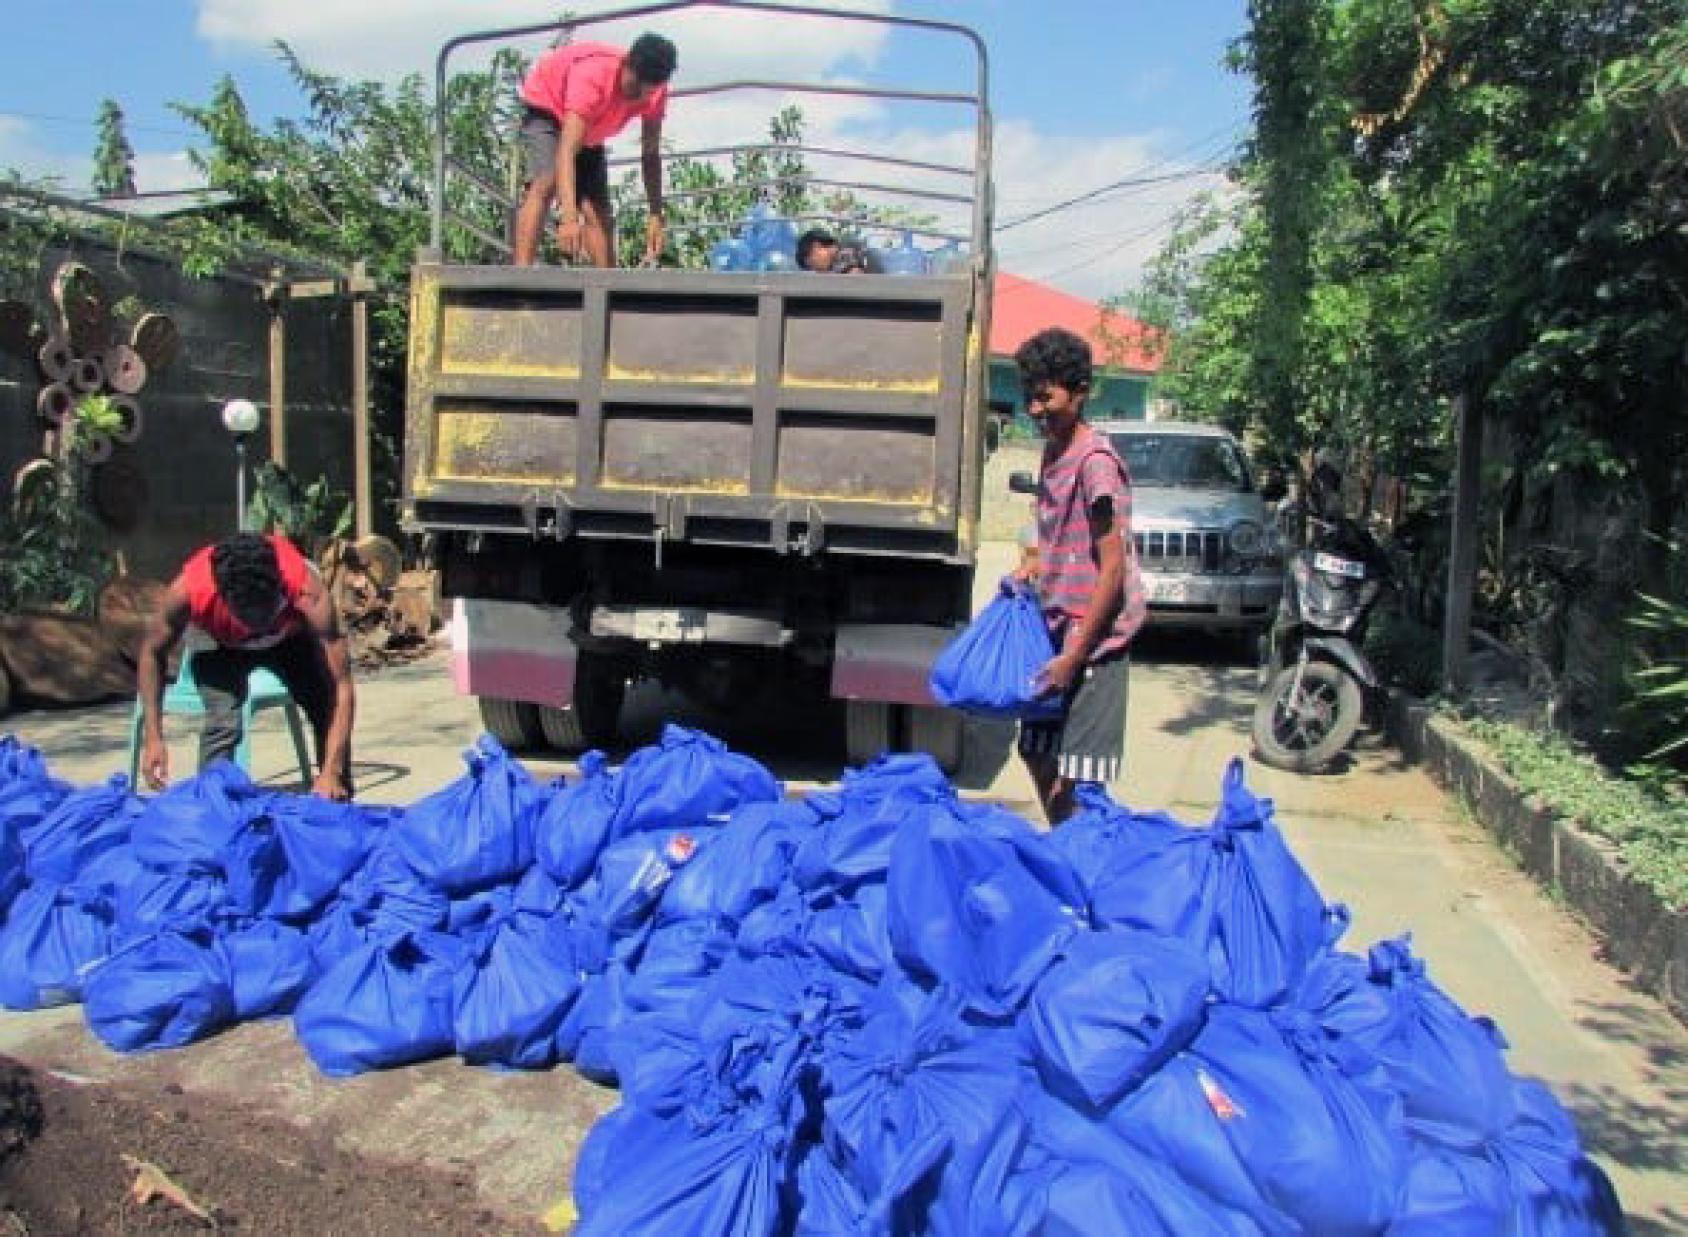 Dans une allée bordée d'arbres, trois jeunes hommes chargent un camion de gros sacs en plastique bleus contenant des produits de première nécessité destinés à être livrés aux personnes touchées par les inondations.